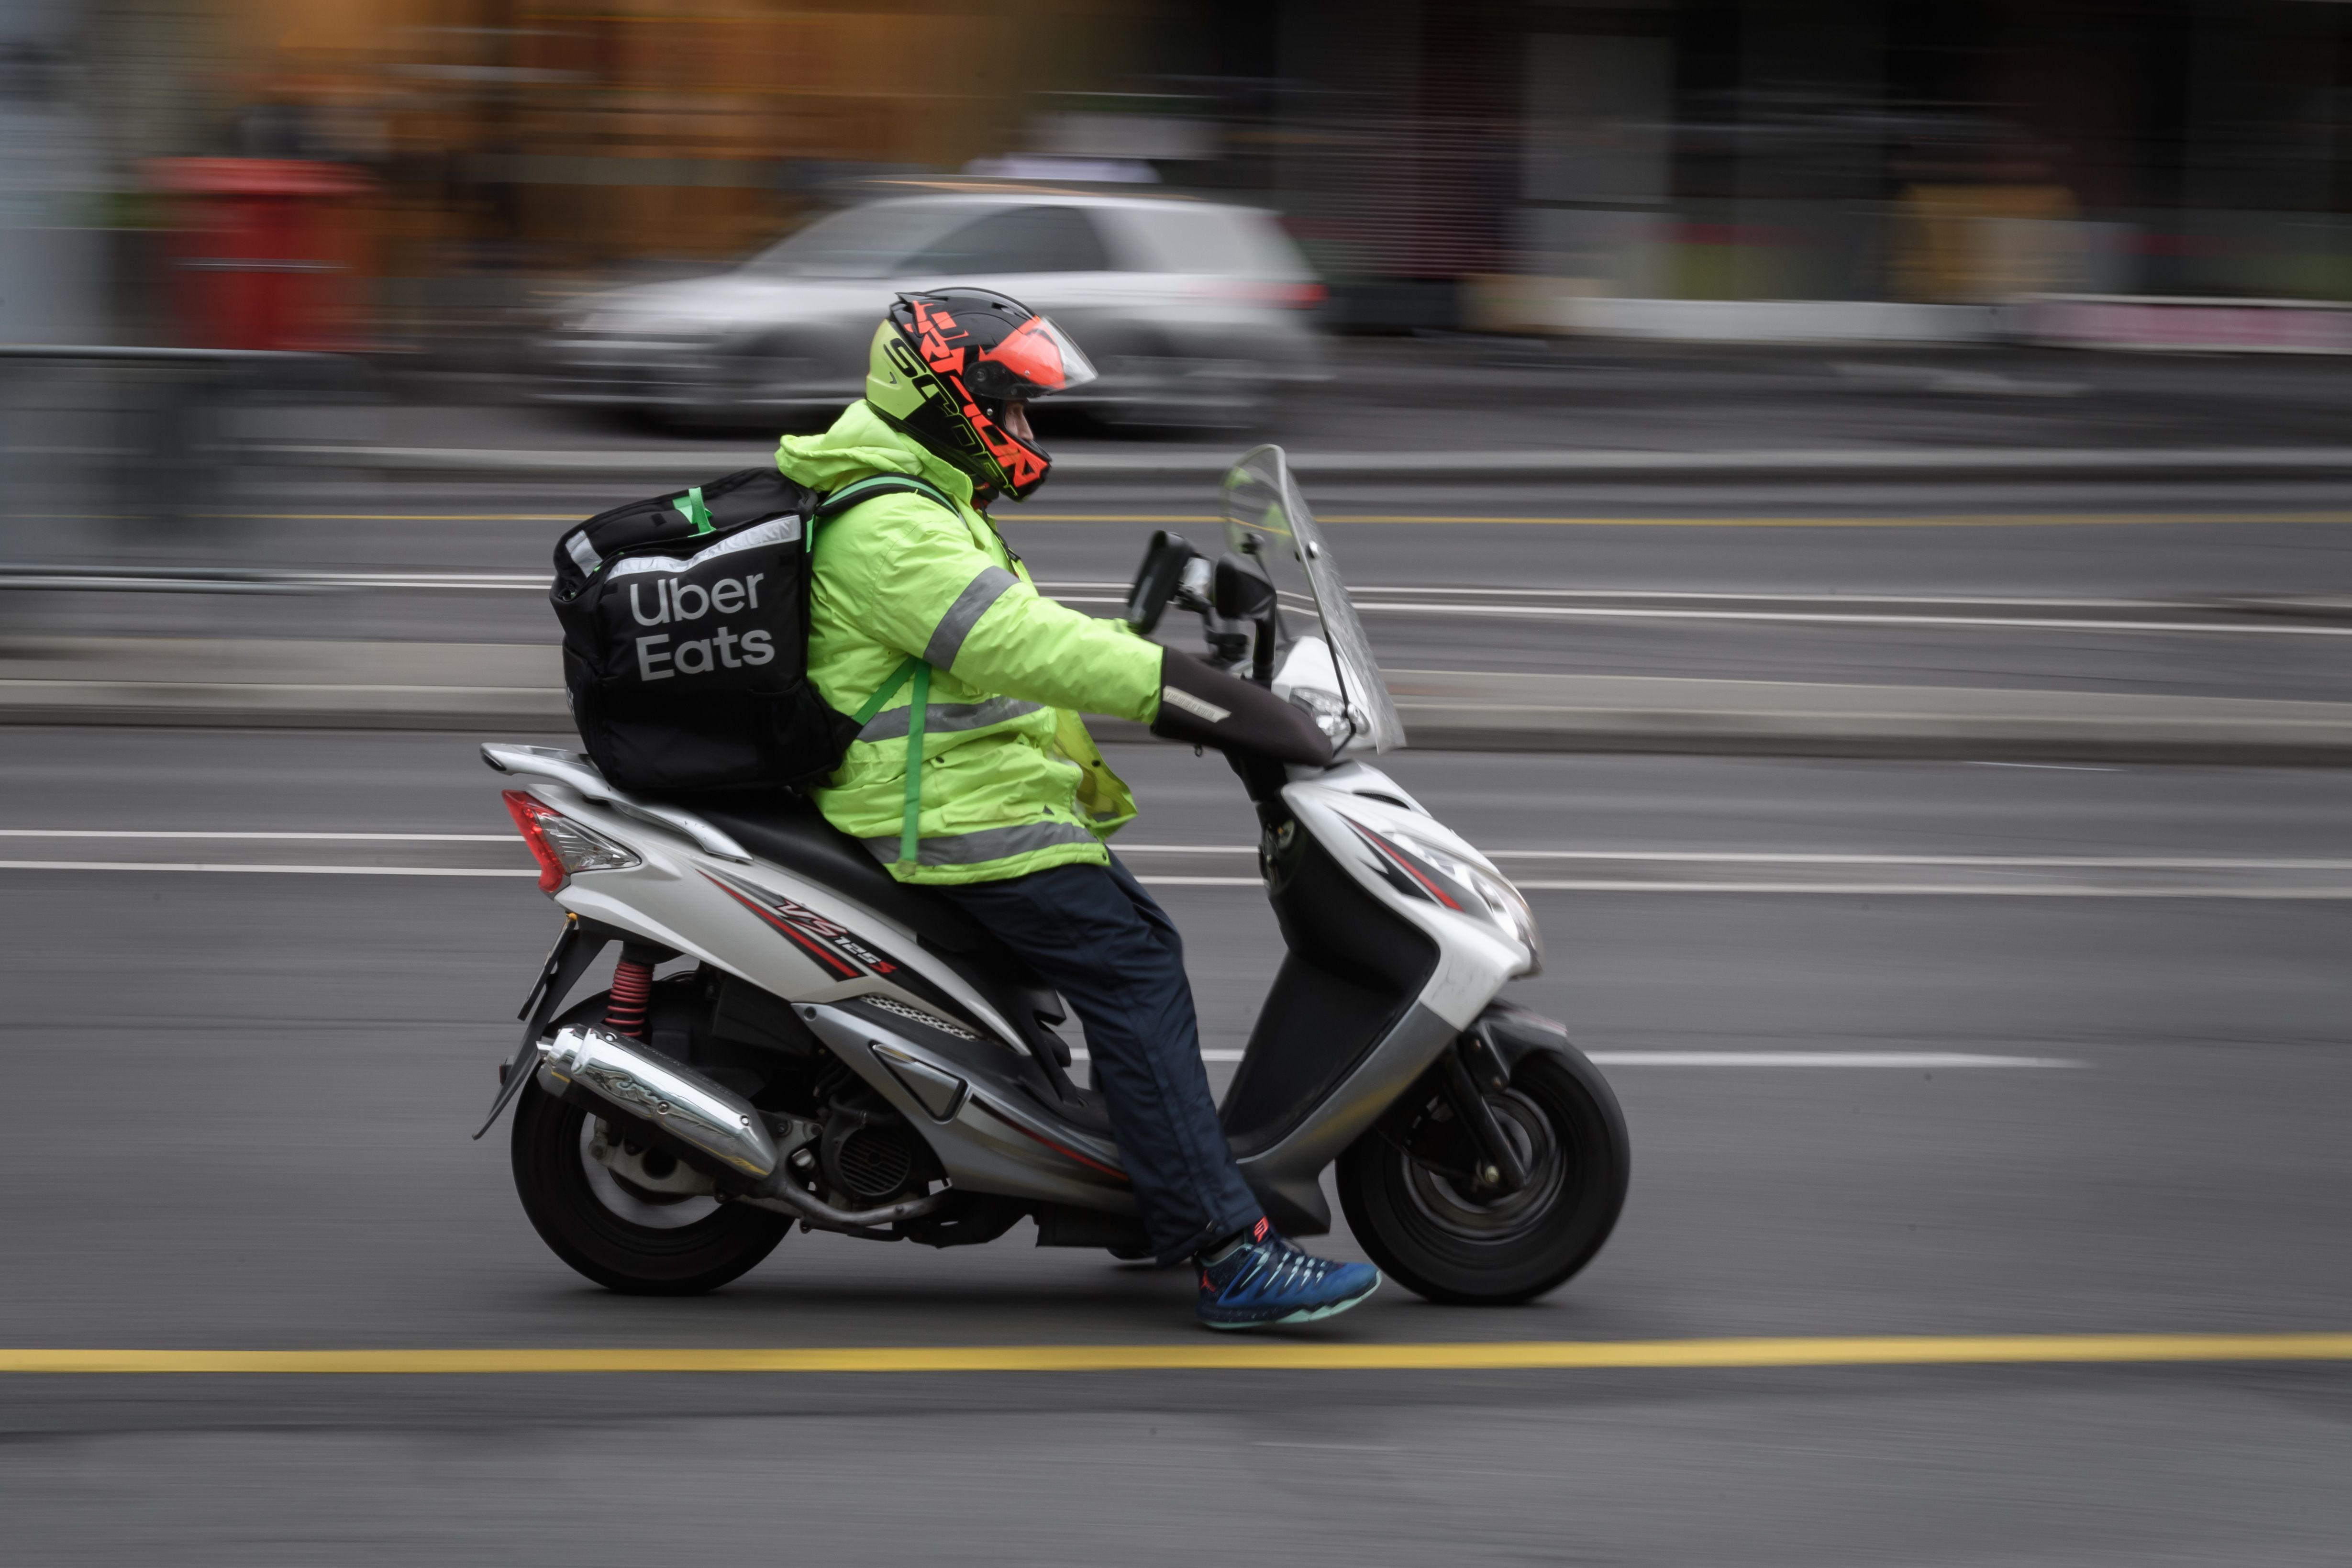 Como los pequeños negocios dependen mucho en su primeros años de la facturación, el delivery puede ser la respuesta. (Foto Prensa Libre: AFP)